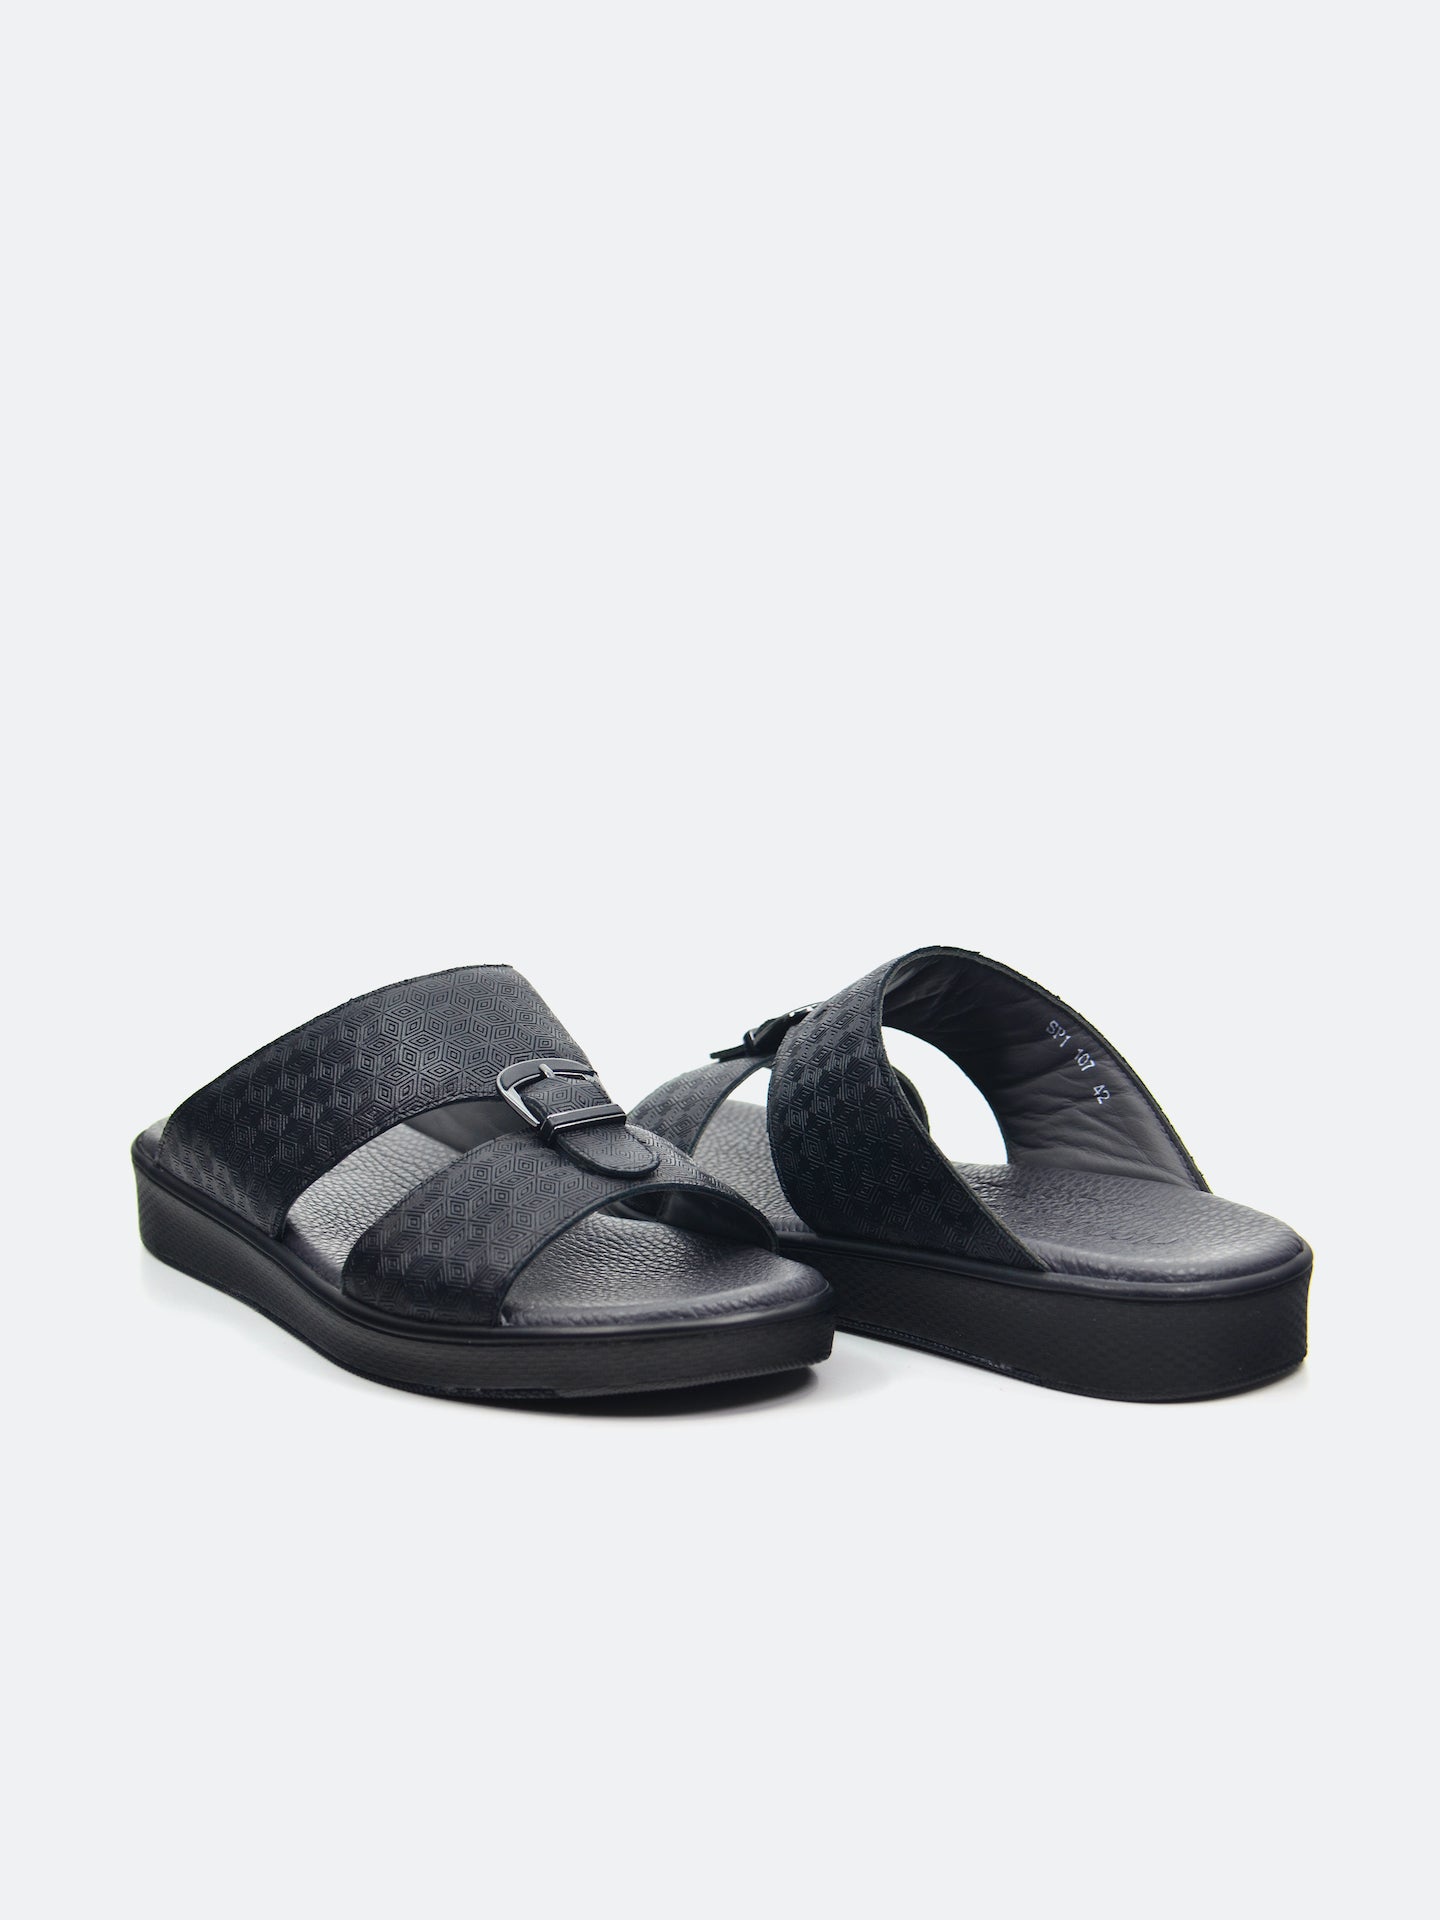 Barjeel Uno SP1-017 Men's Arabic Sandals #color_Black